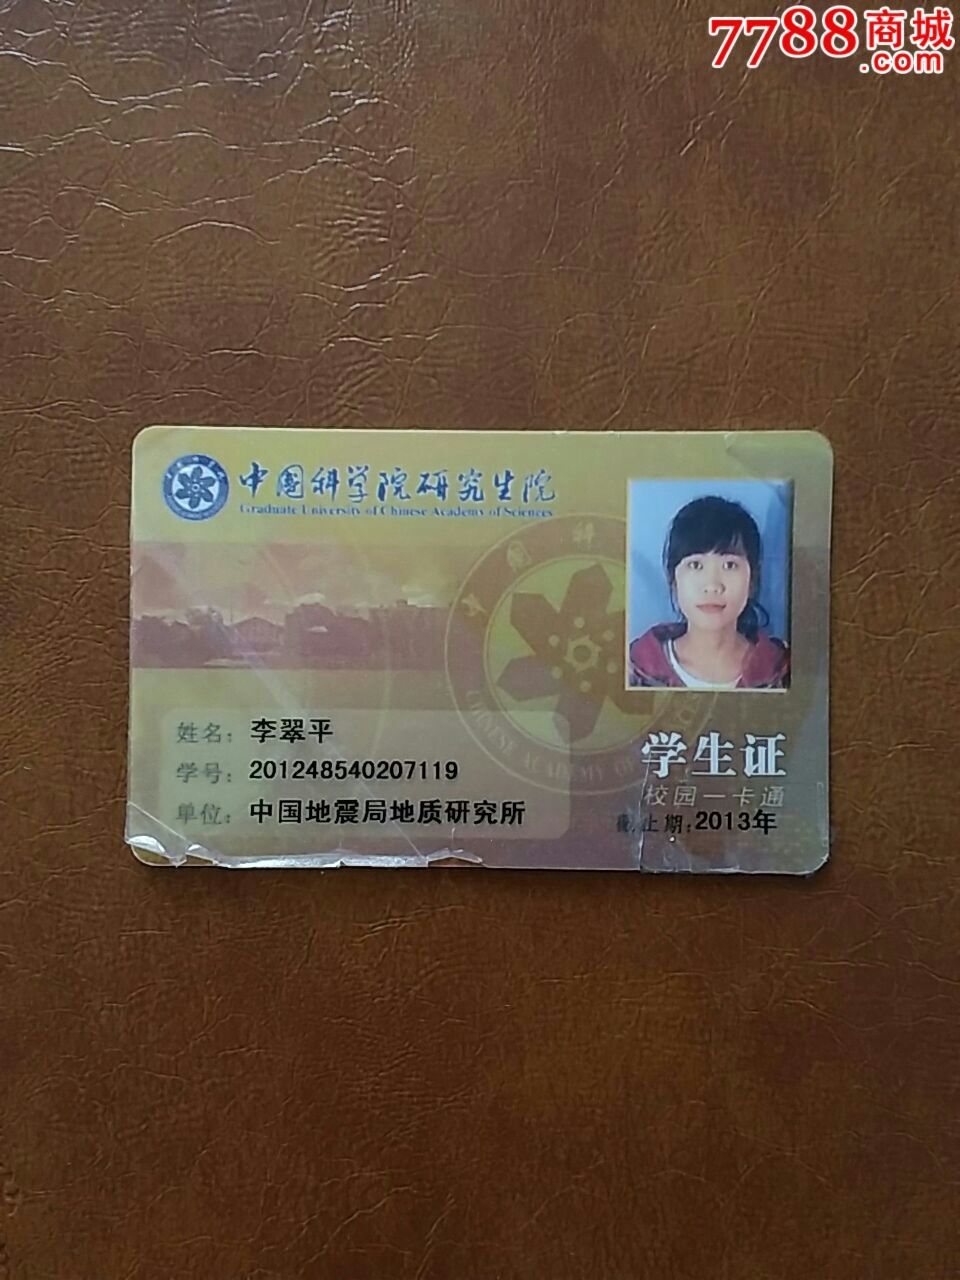 中国科学院研究生院校园卡使用手册